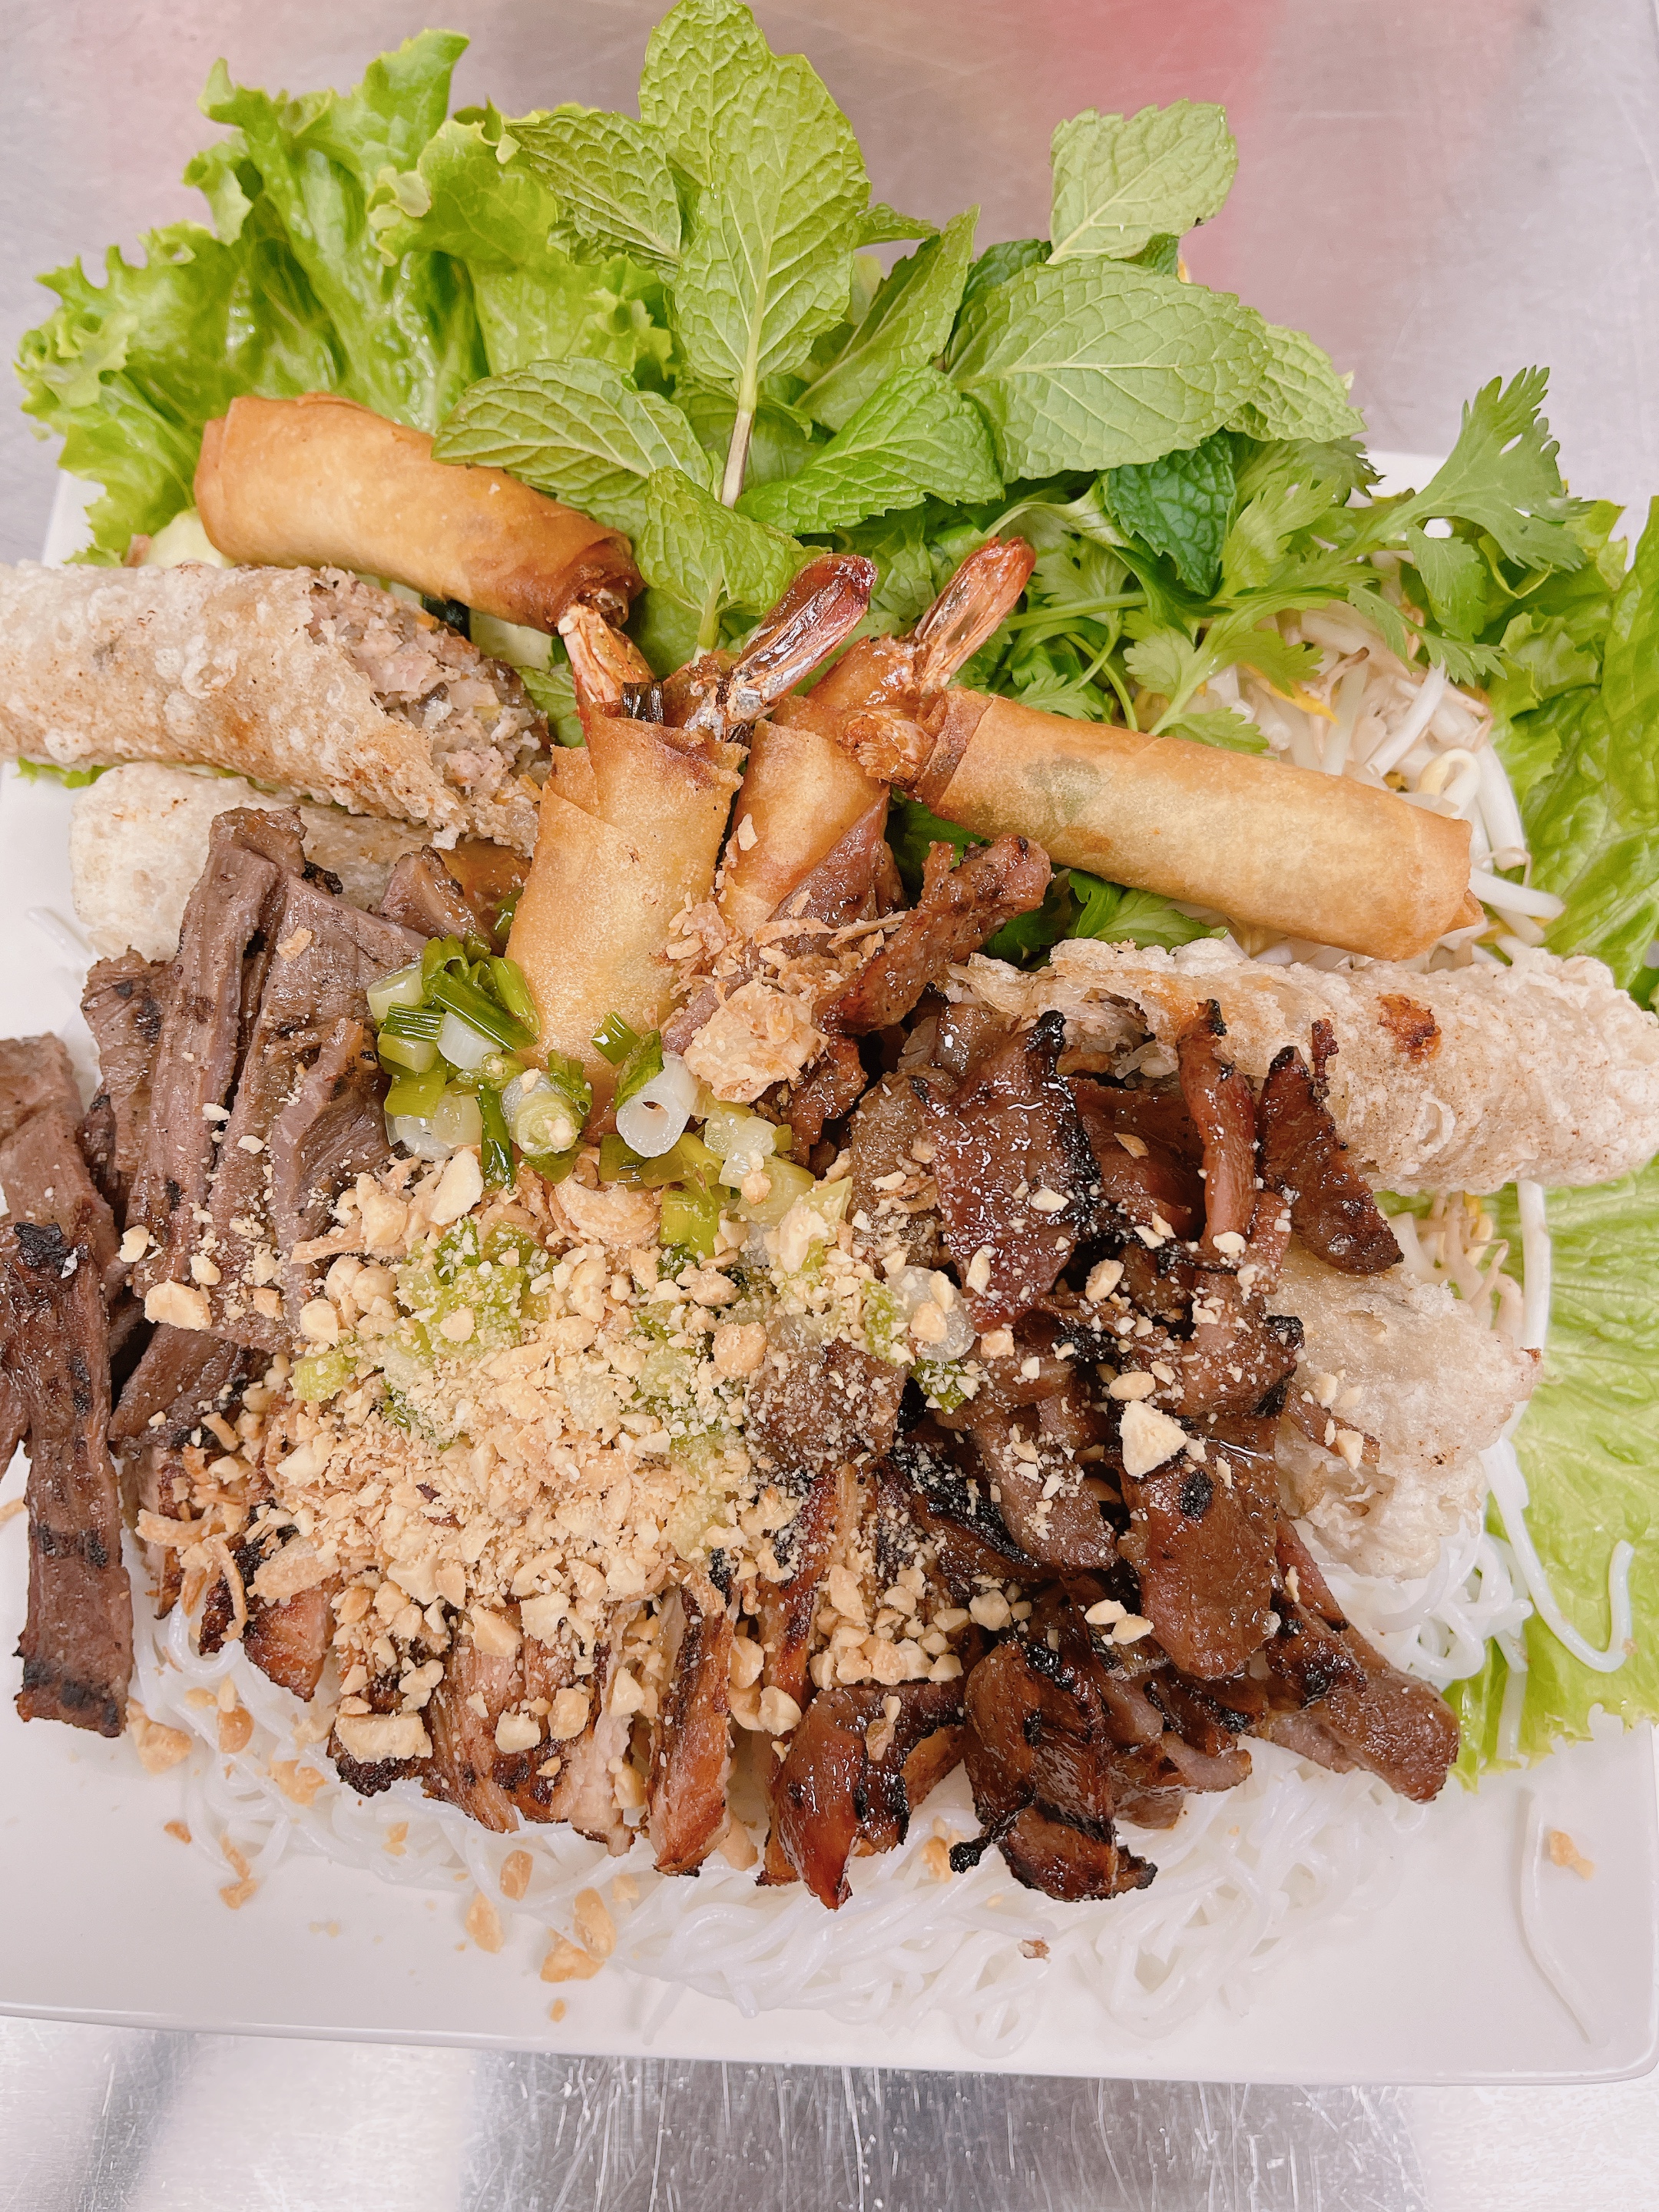 Order 16A. Pho Saigon Basil Special food online from Pho Saigon Basil store, Denver on bringmethat.com